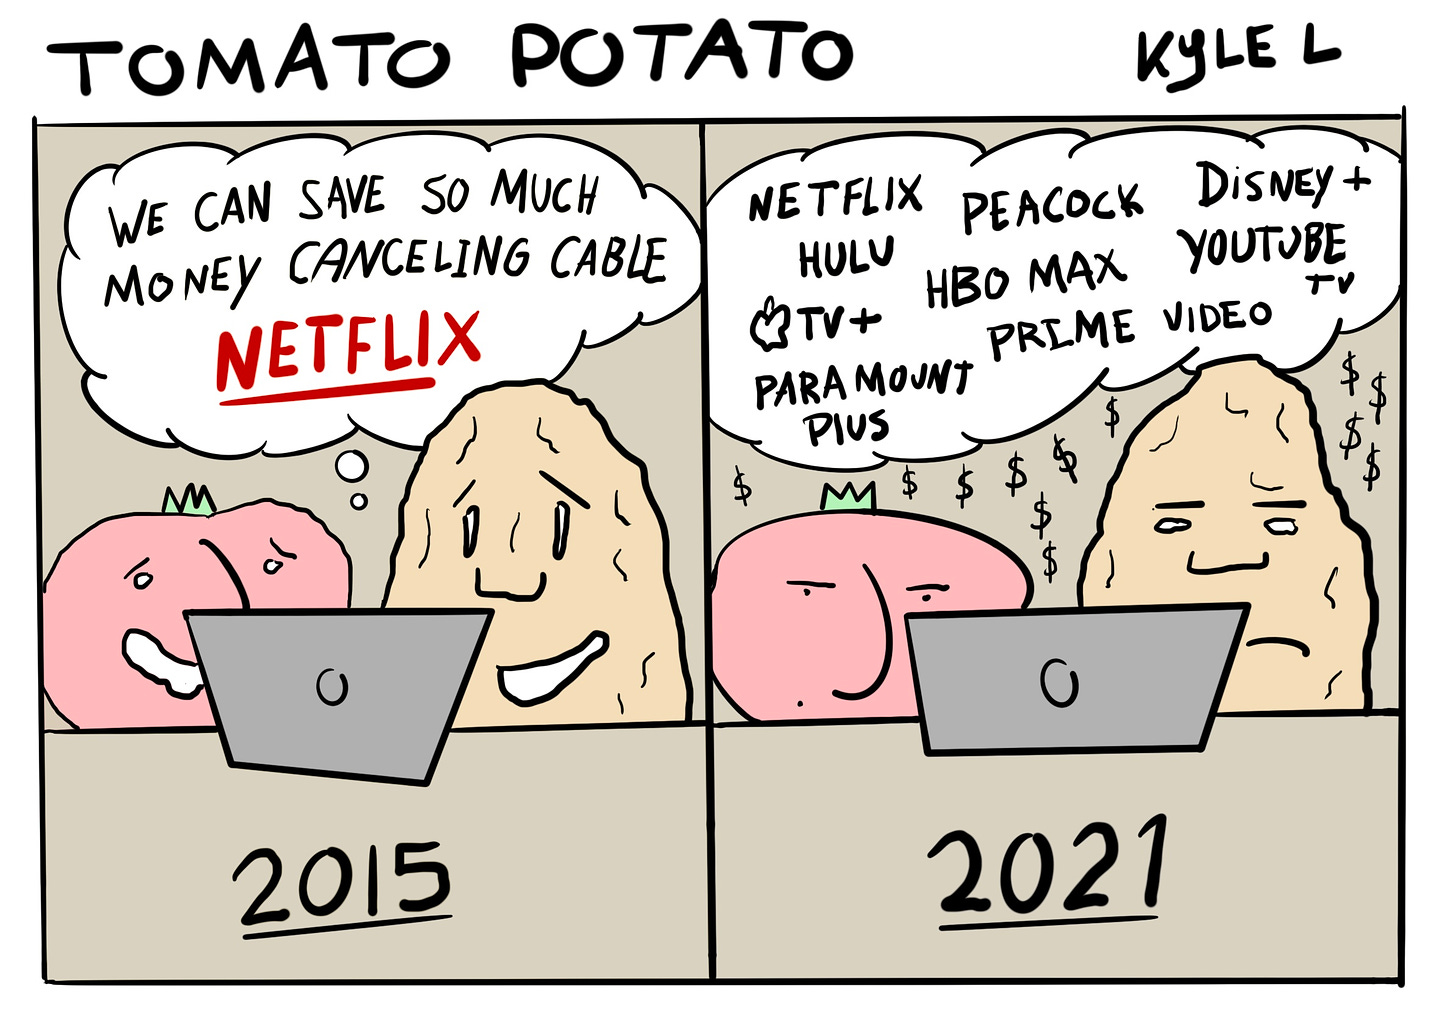 Tomato Potato web comic